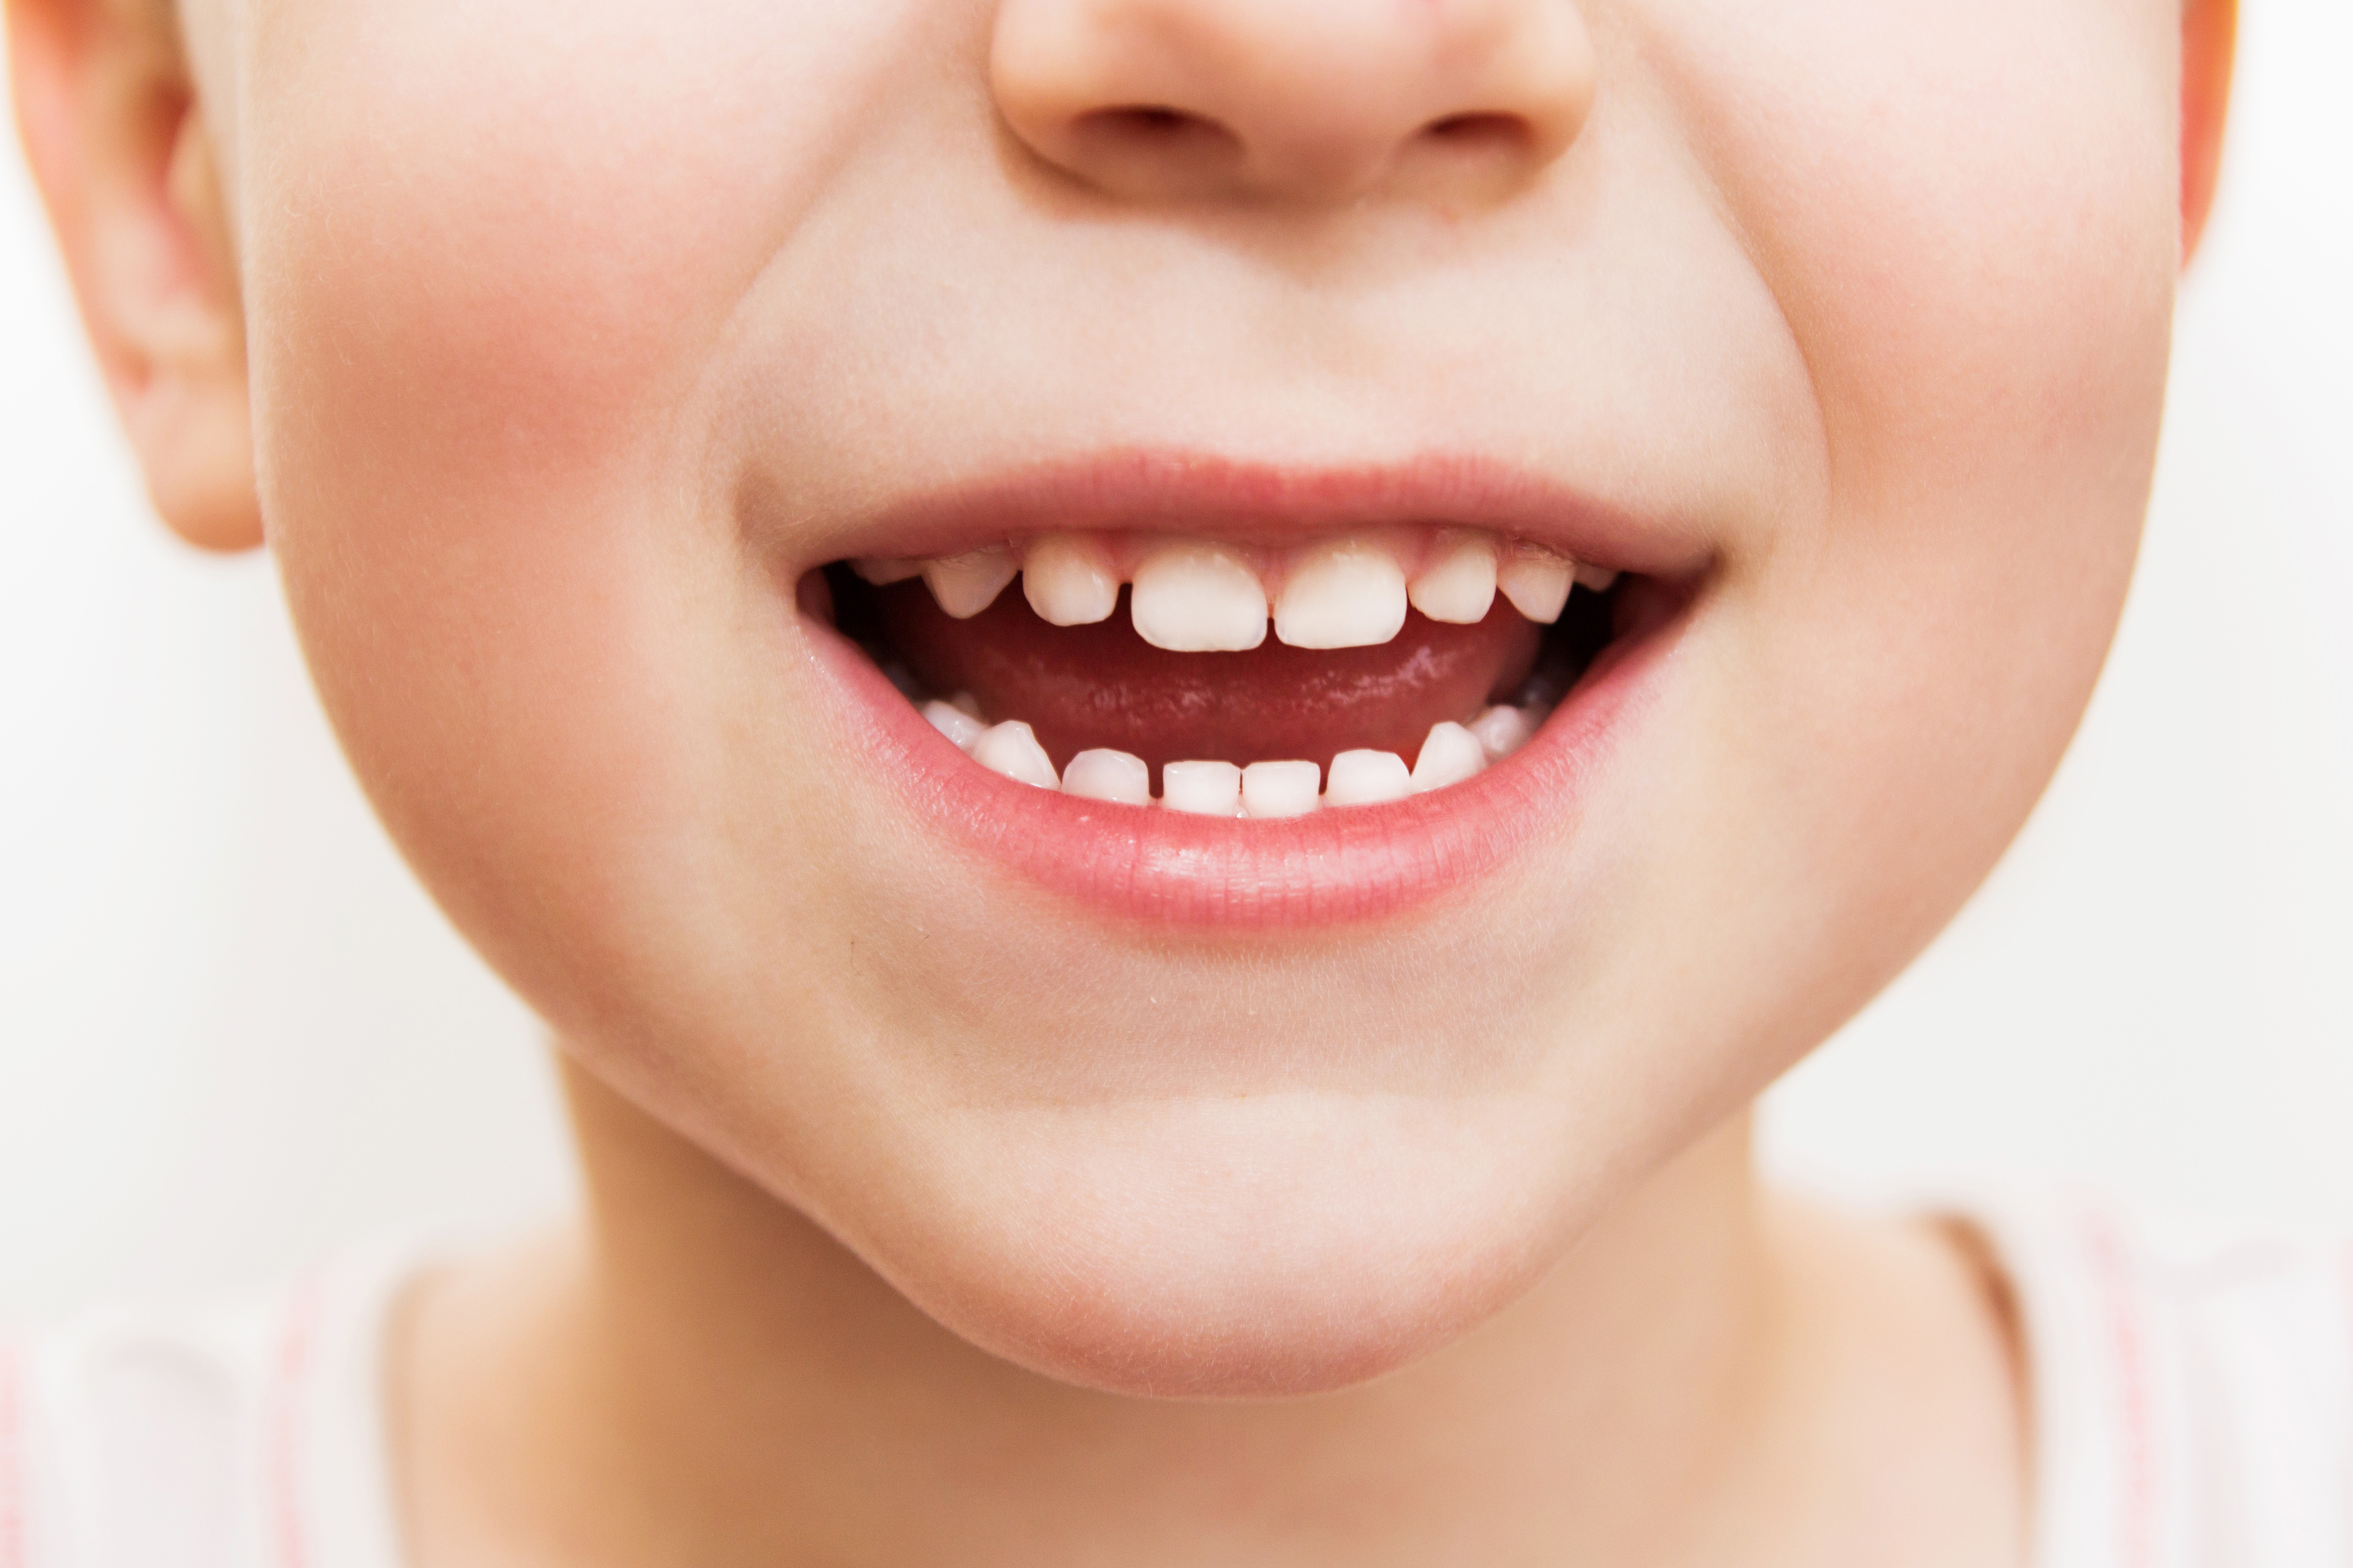 Зубы человека у детей. Красивые детские зубы. Красивая улыбка. Детская улыбка.